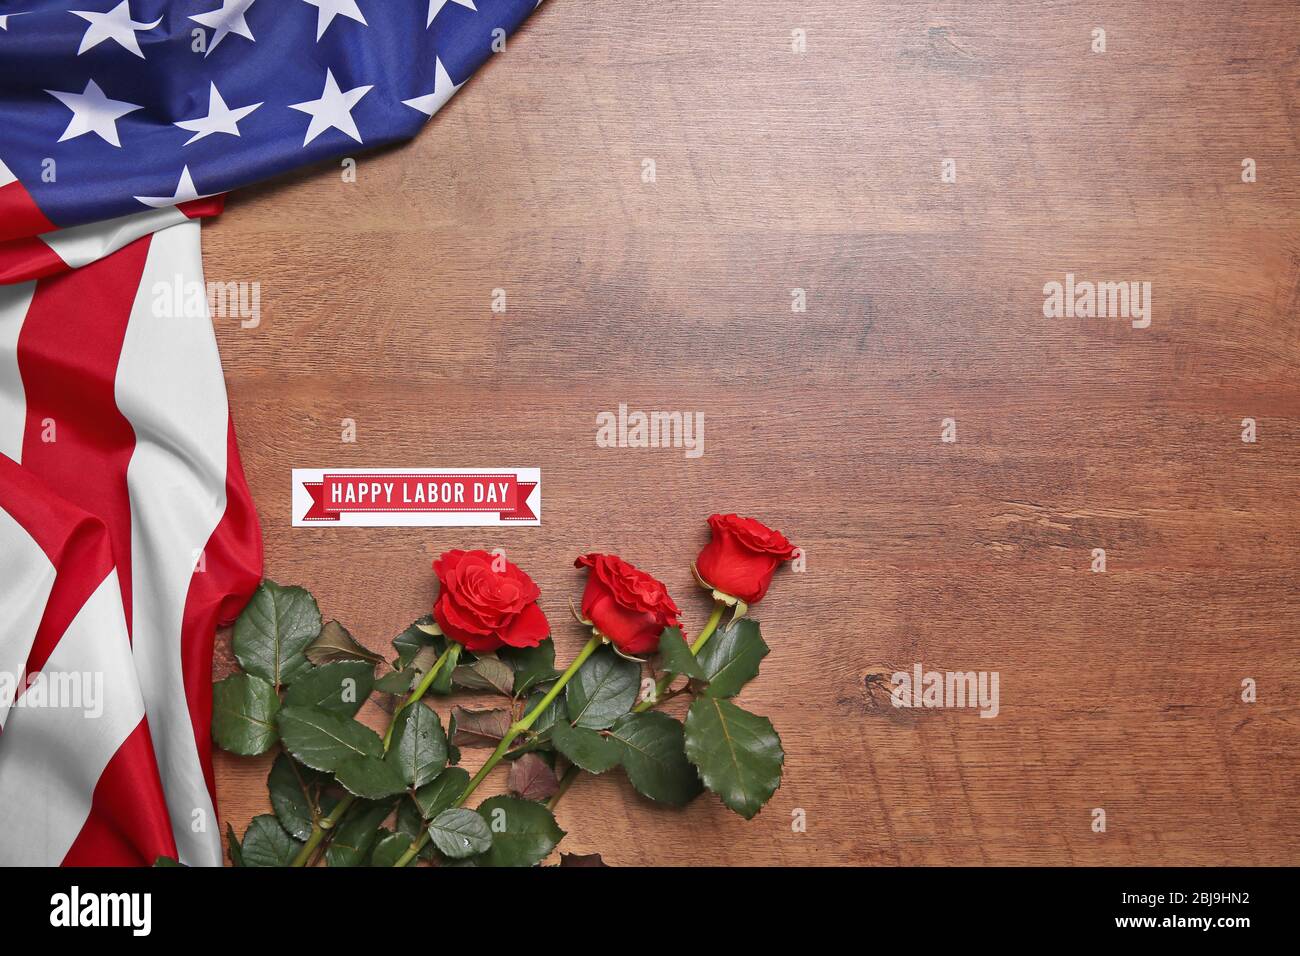 Rosen und amerikanische Flagge auf einem hölzernen Hintergrund. Konzept des Arbeitstages Stockfoto